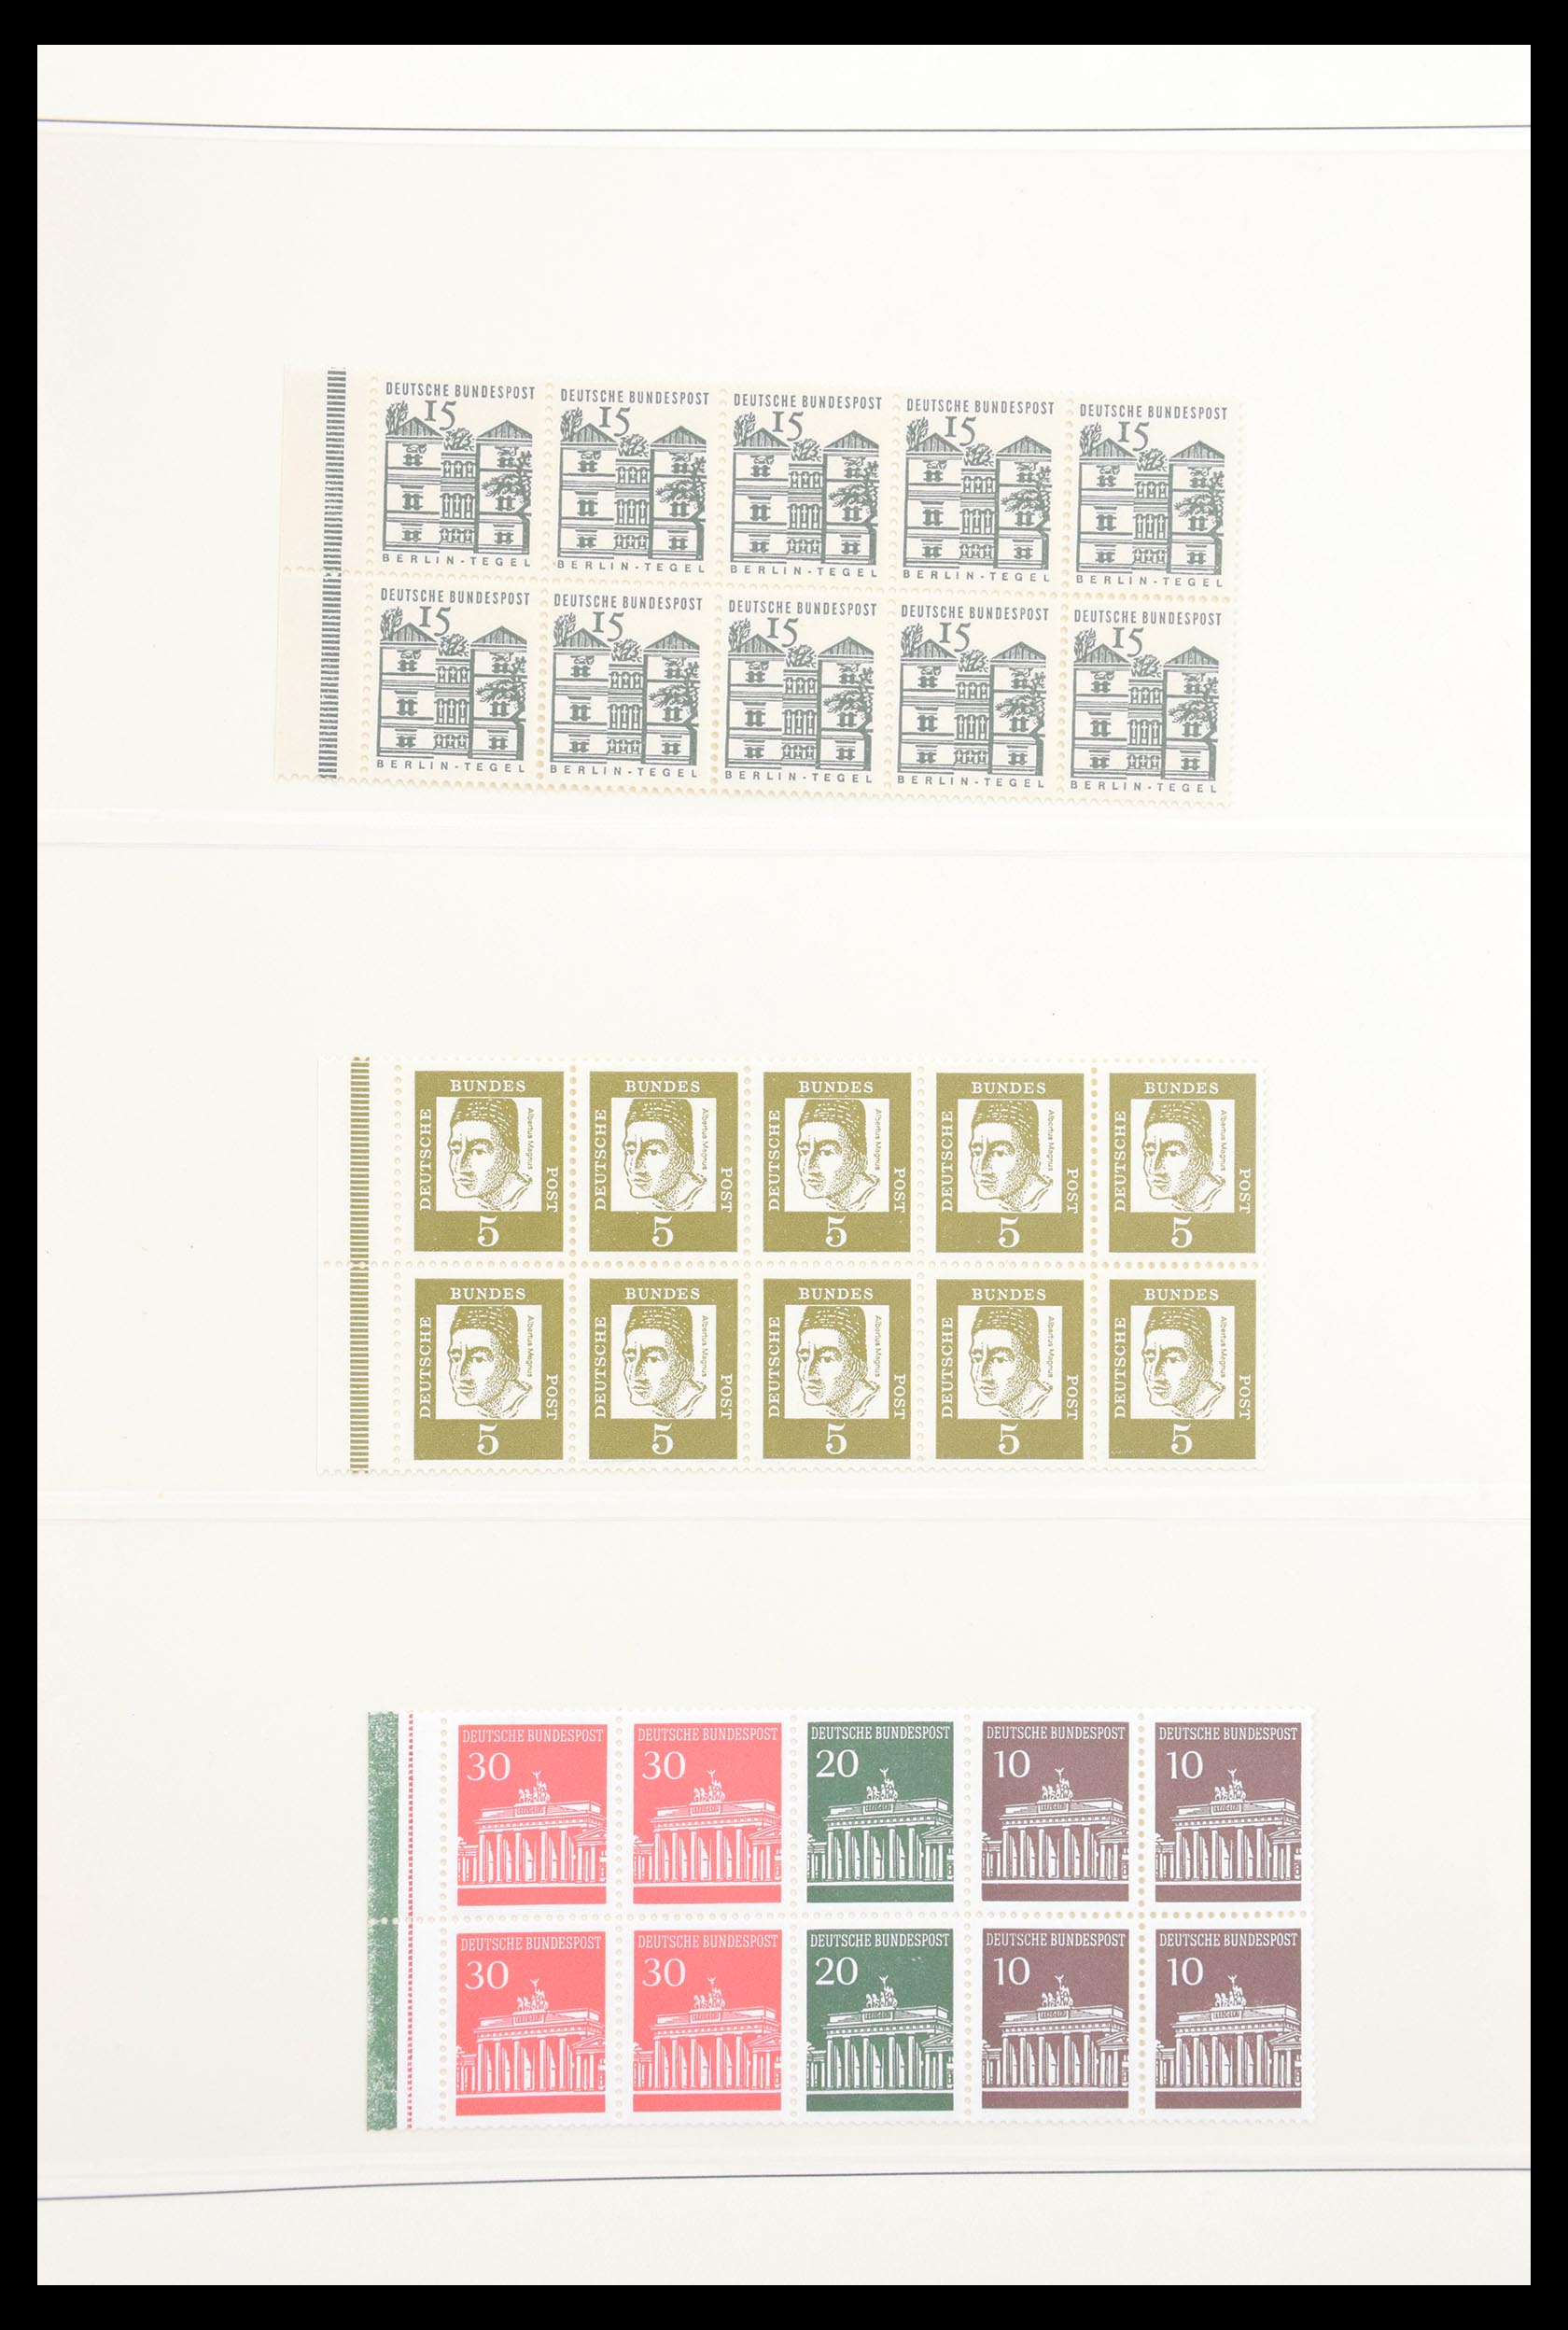 30605 041 - 30605 Bundespost combinations 1951-1974.